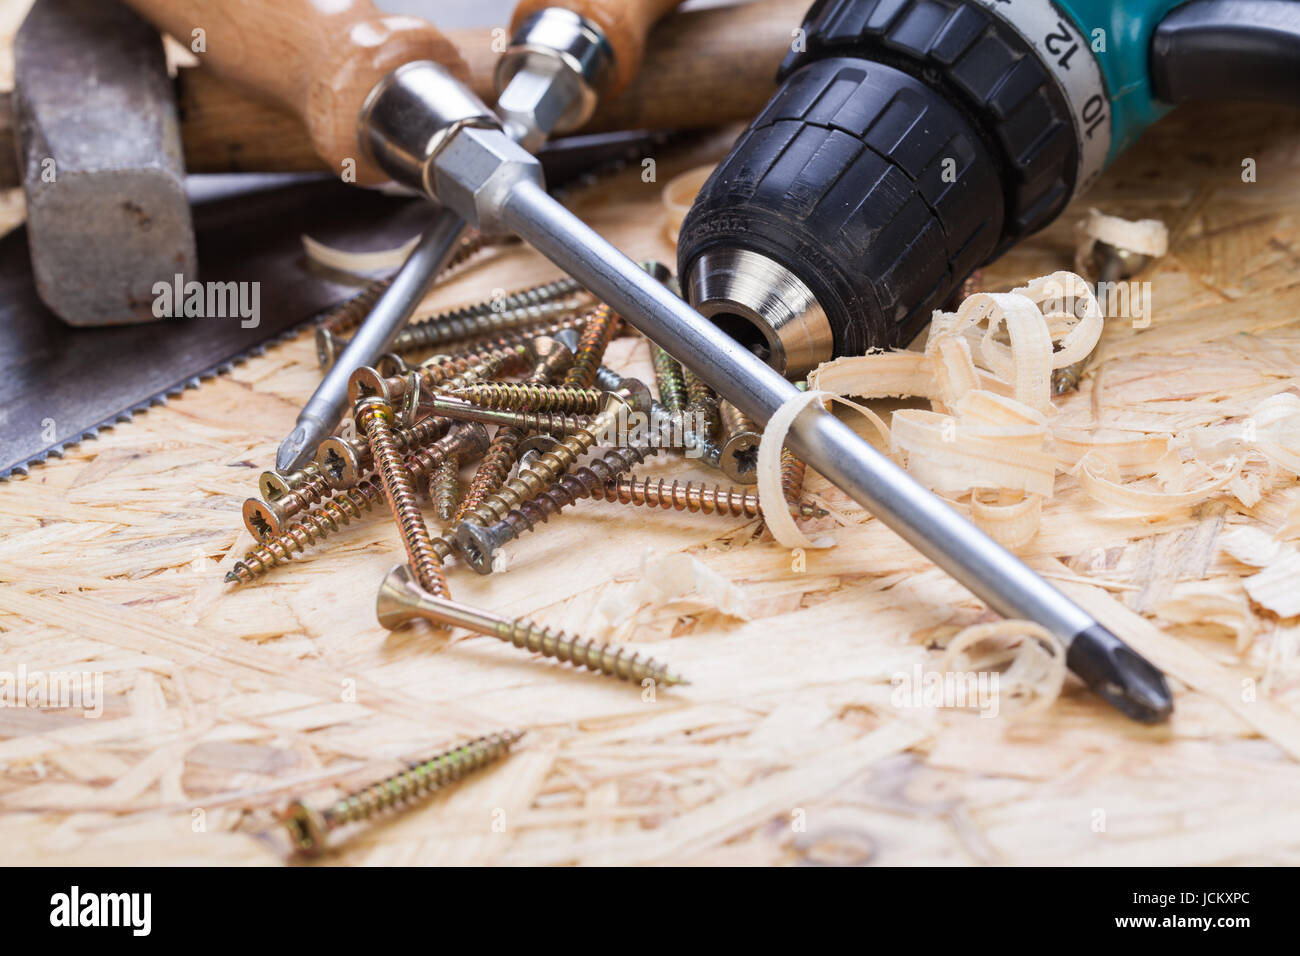 Heimwerker Werkzeug mit Akkuschrauber, Schraubendreher, Säge und Schrauben in einer Werkstatt Stock Photo